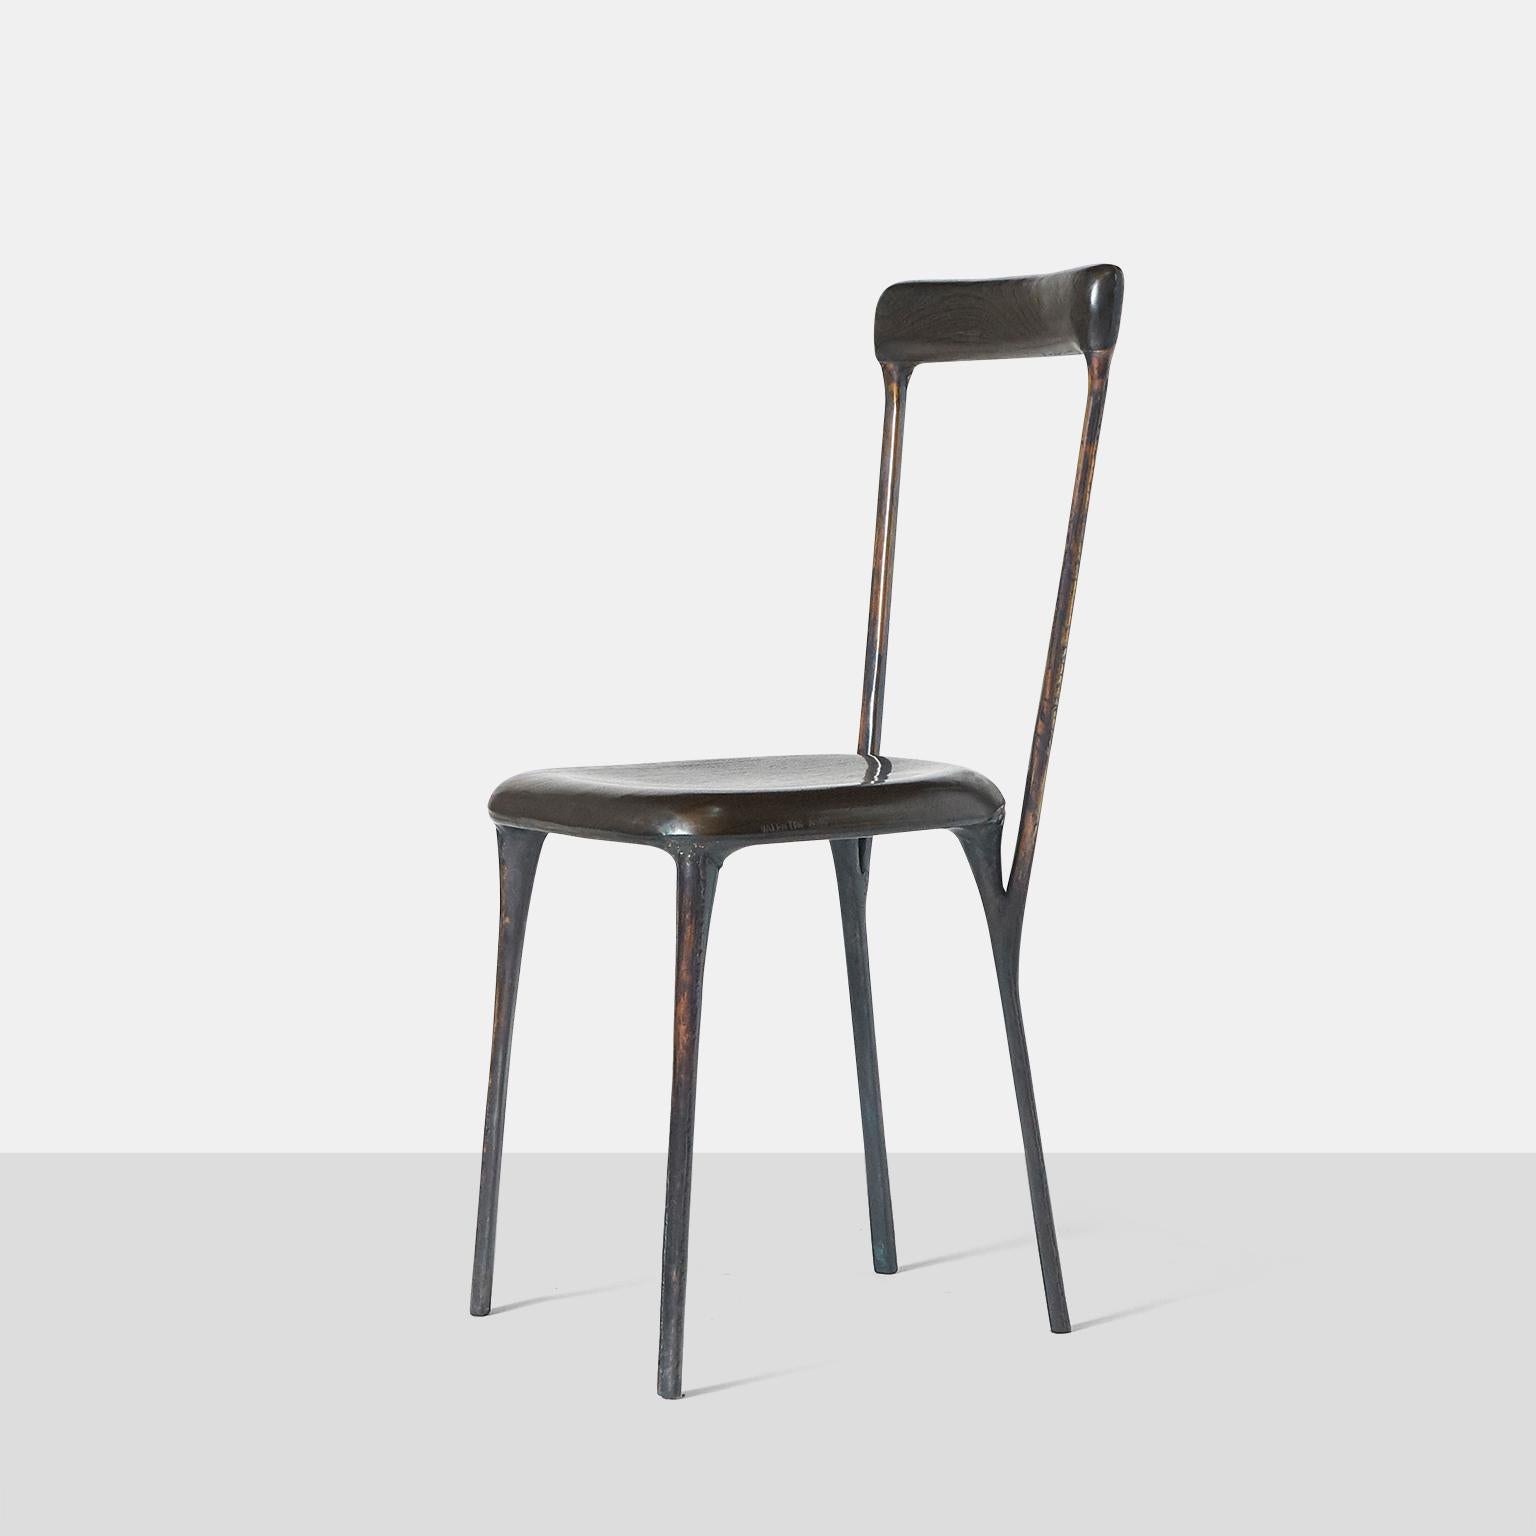 Ein Beistellstuhl des deutschen Möbeldesigners Valentin Loellmann, ca. 2017. Vollständig handgefertigt aus Kupfer und nicht gegossen, mit einem Sitz aus verkohlter Eiche und einer Rückenlehne aus Wenge, die an die geschwungene Form angepasst ist.